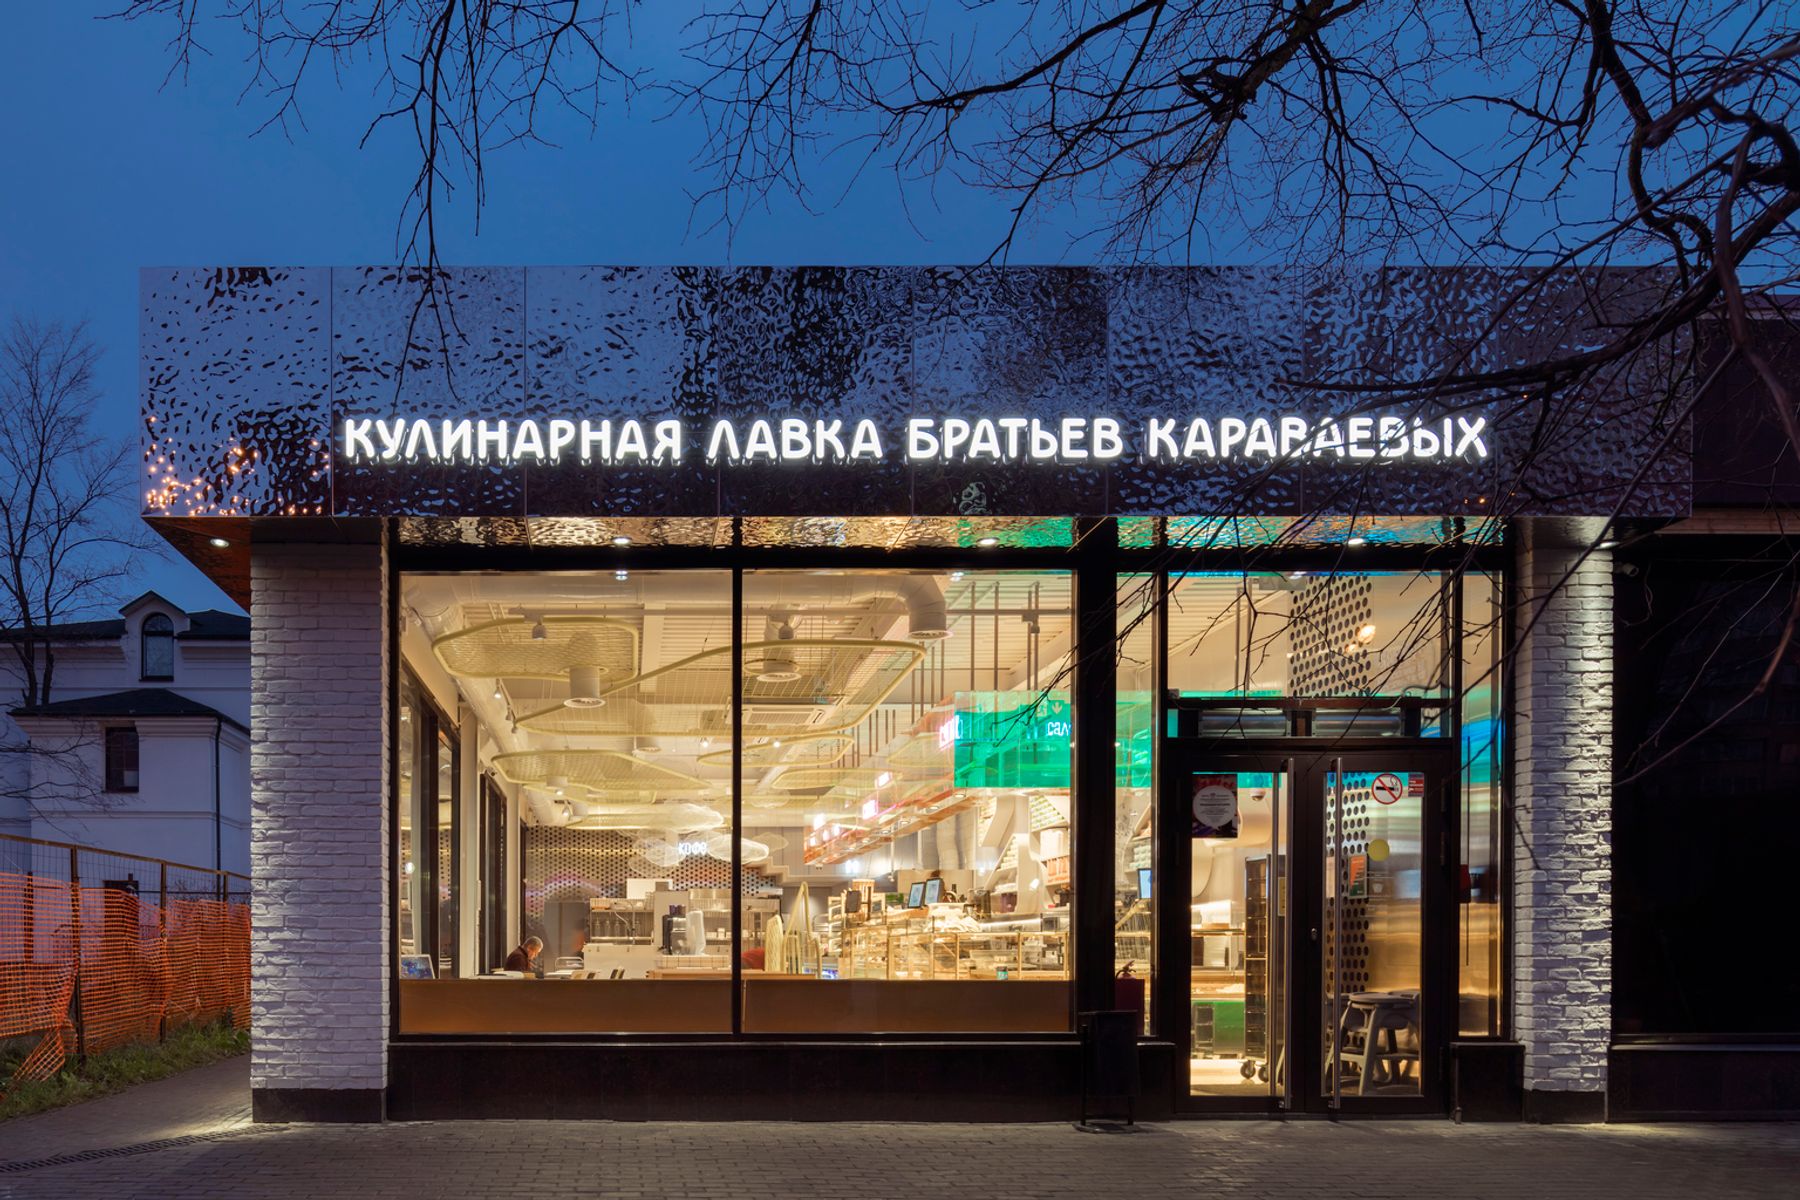 Karavaevi Brothers Cafe – Krzhizhanovskogo, Moscow. Architecture and lighting design: V12 Architects / Vvgeniy Shchetinkin, Lleeza Semionova, Moscow. Photography: D. Chebanenko.